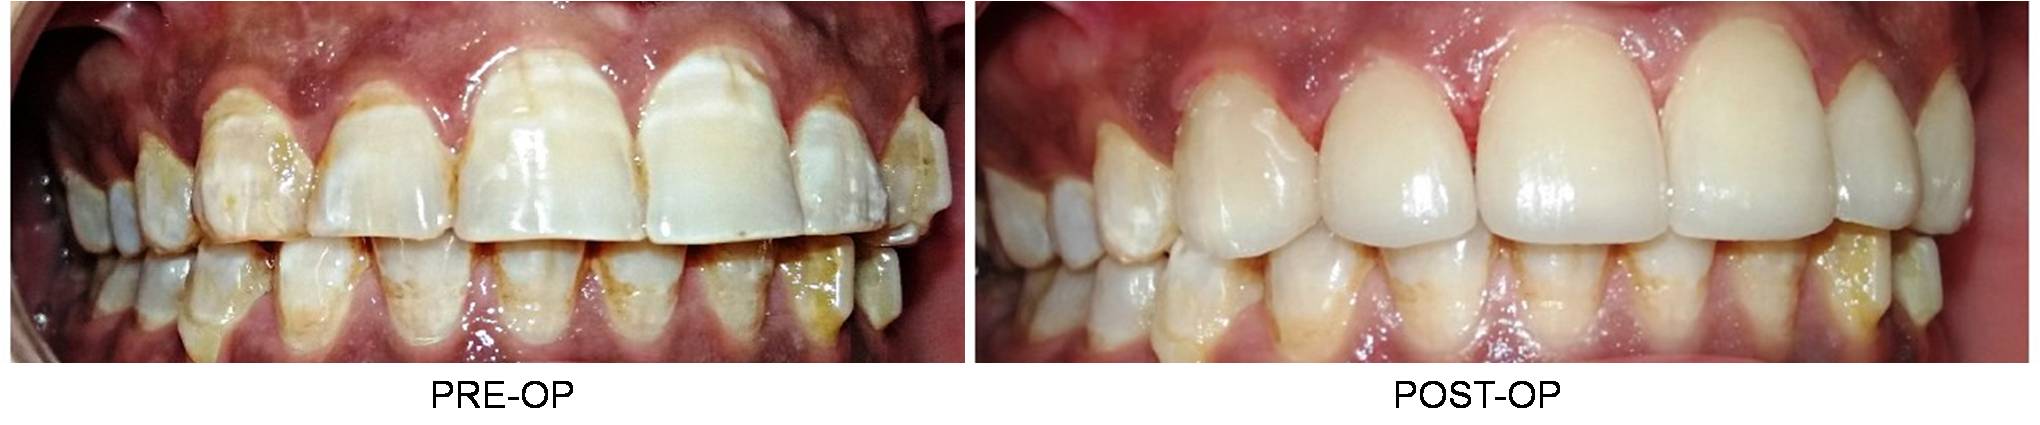 Dental Veneers in Delhi Before and After